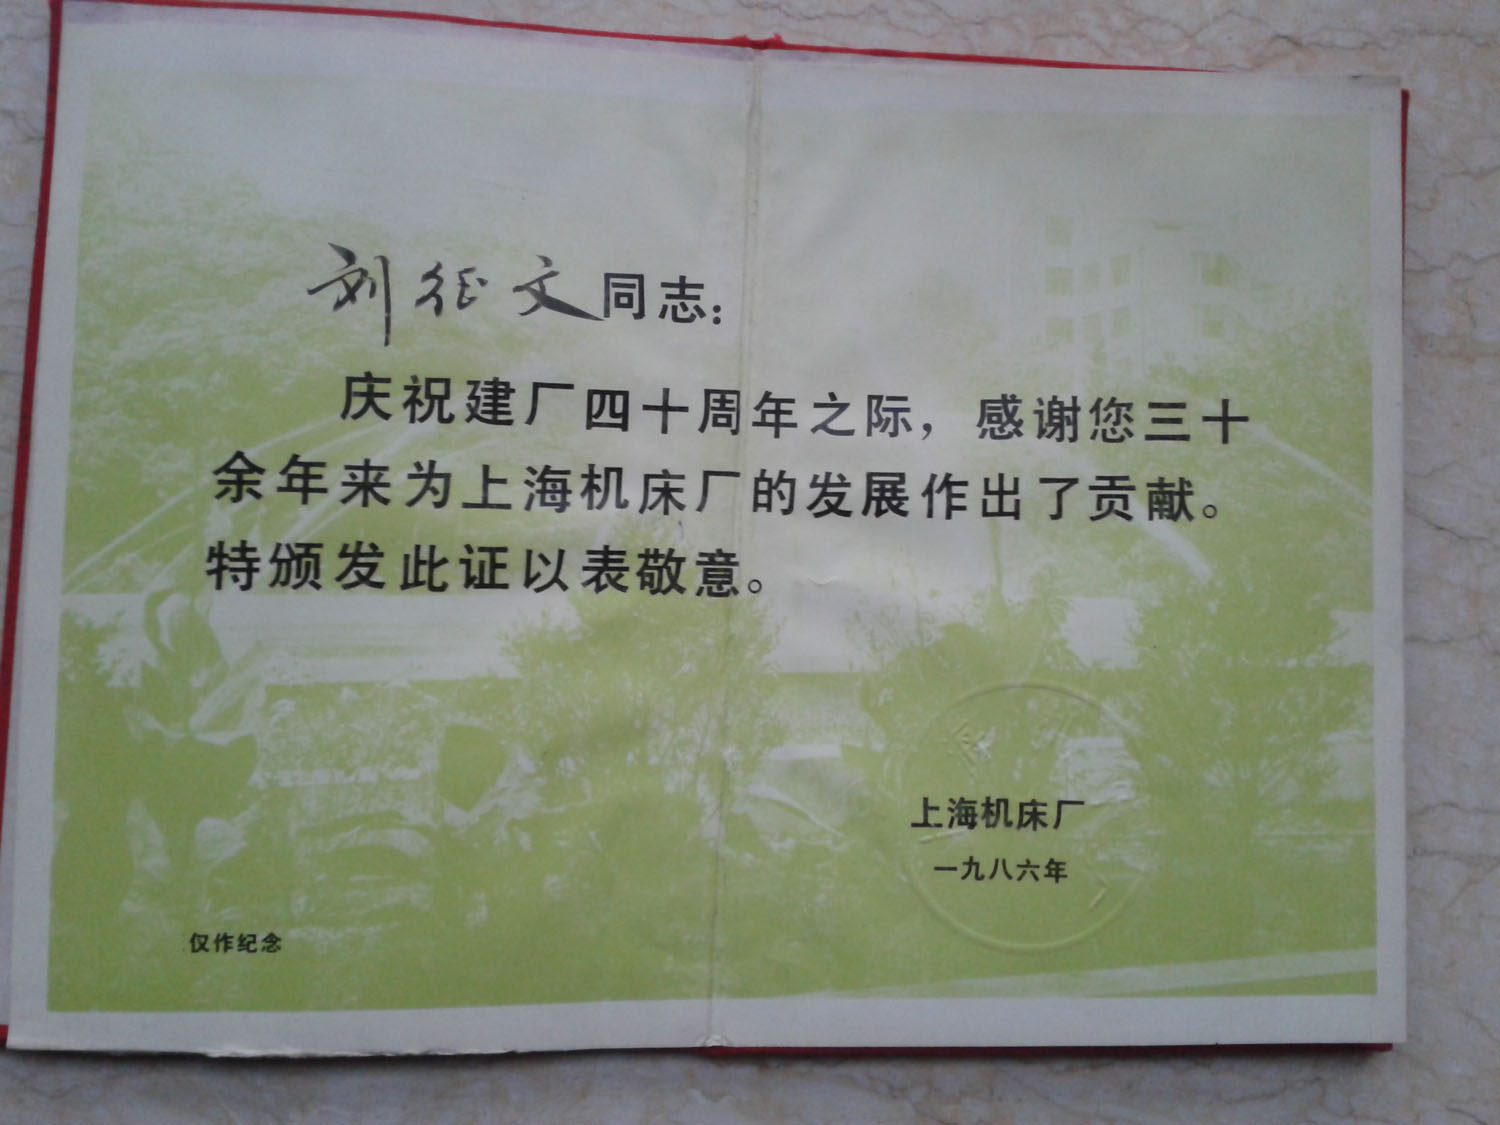 父亲上海机床厂建厂40周年荣誉证书.jpg